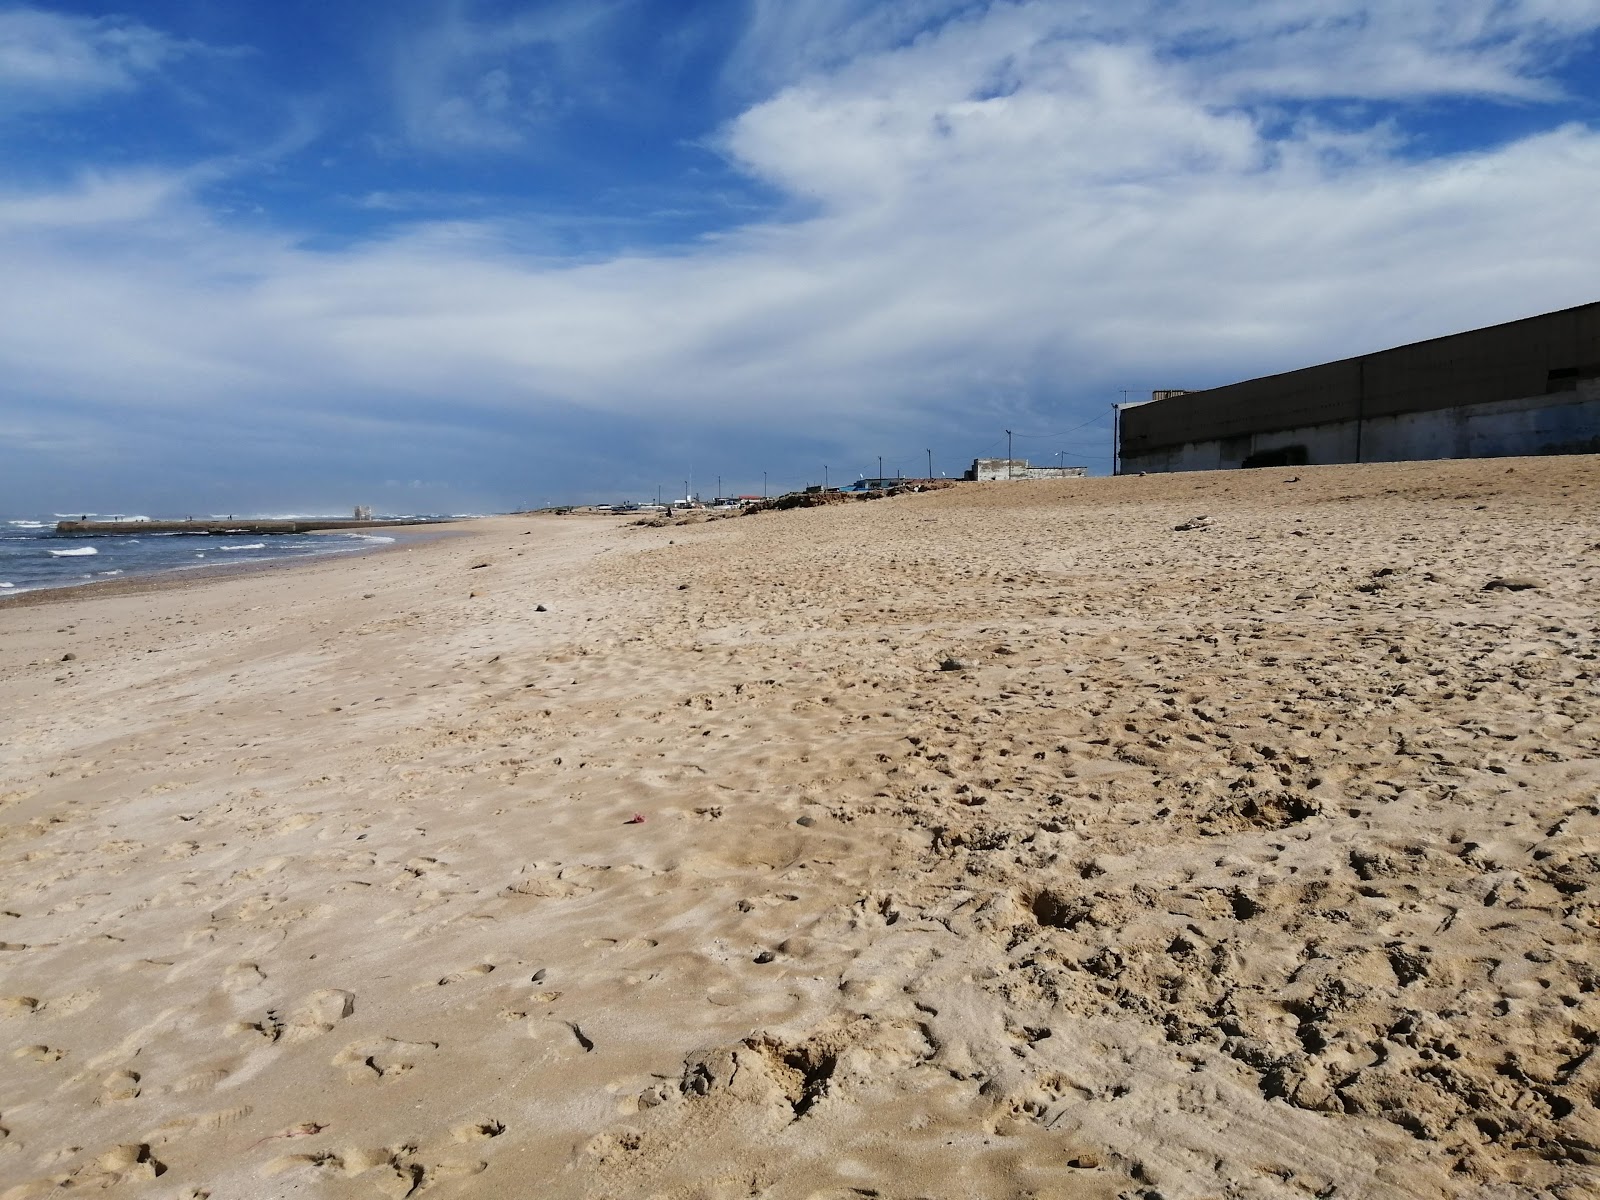 Foto di shaty yn sb con una superficie del sabbia fine e luminosa